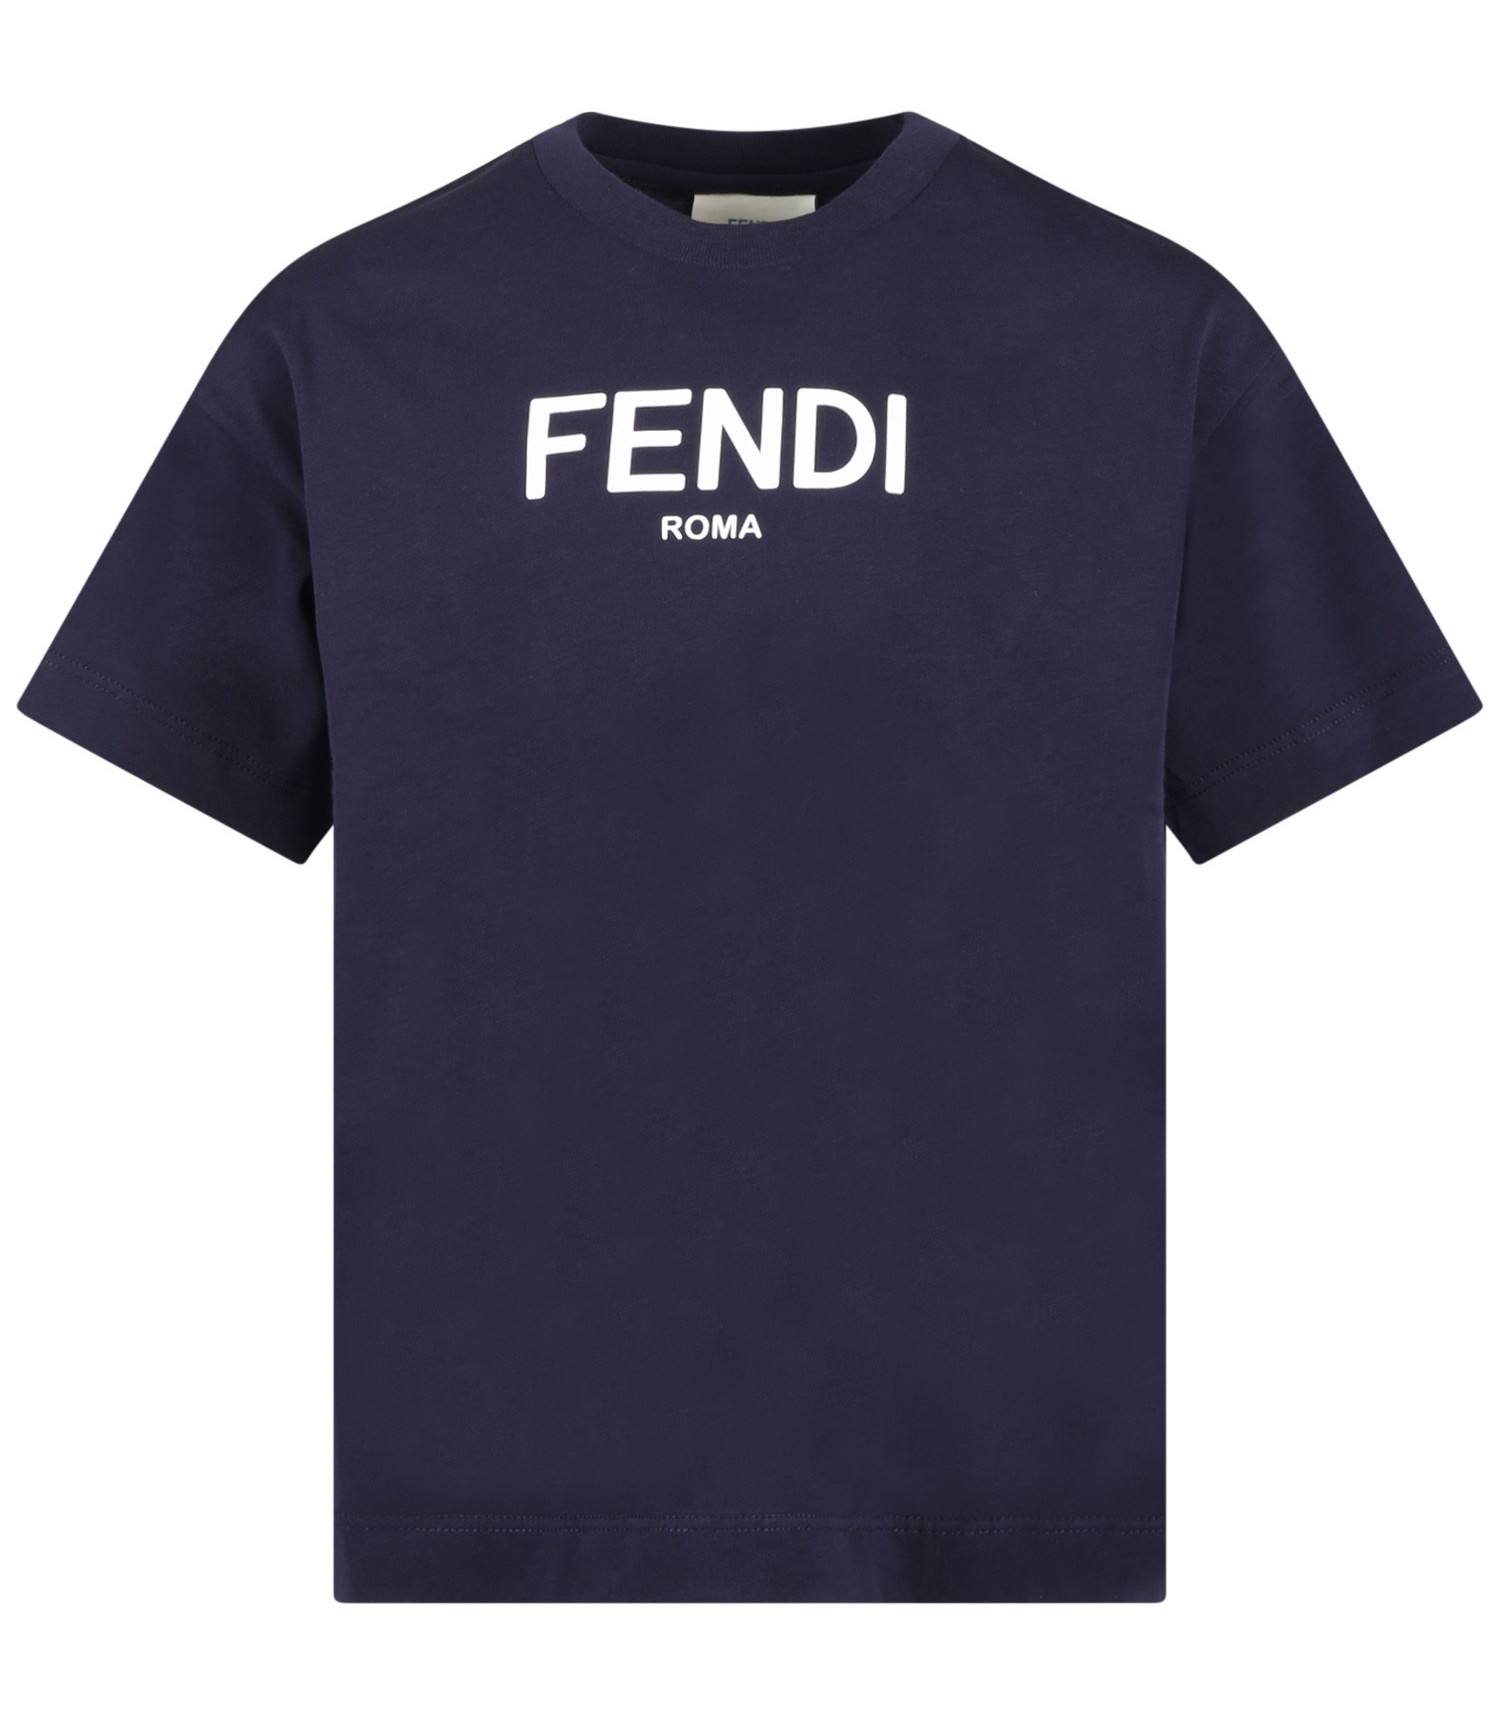 FENDI jui1377 tshirt F0GME black